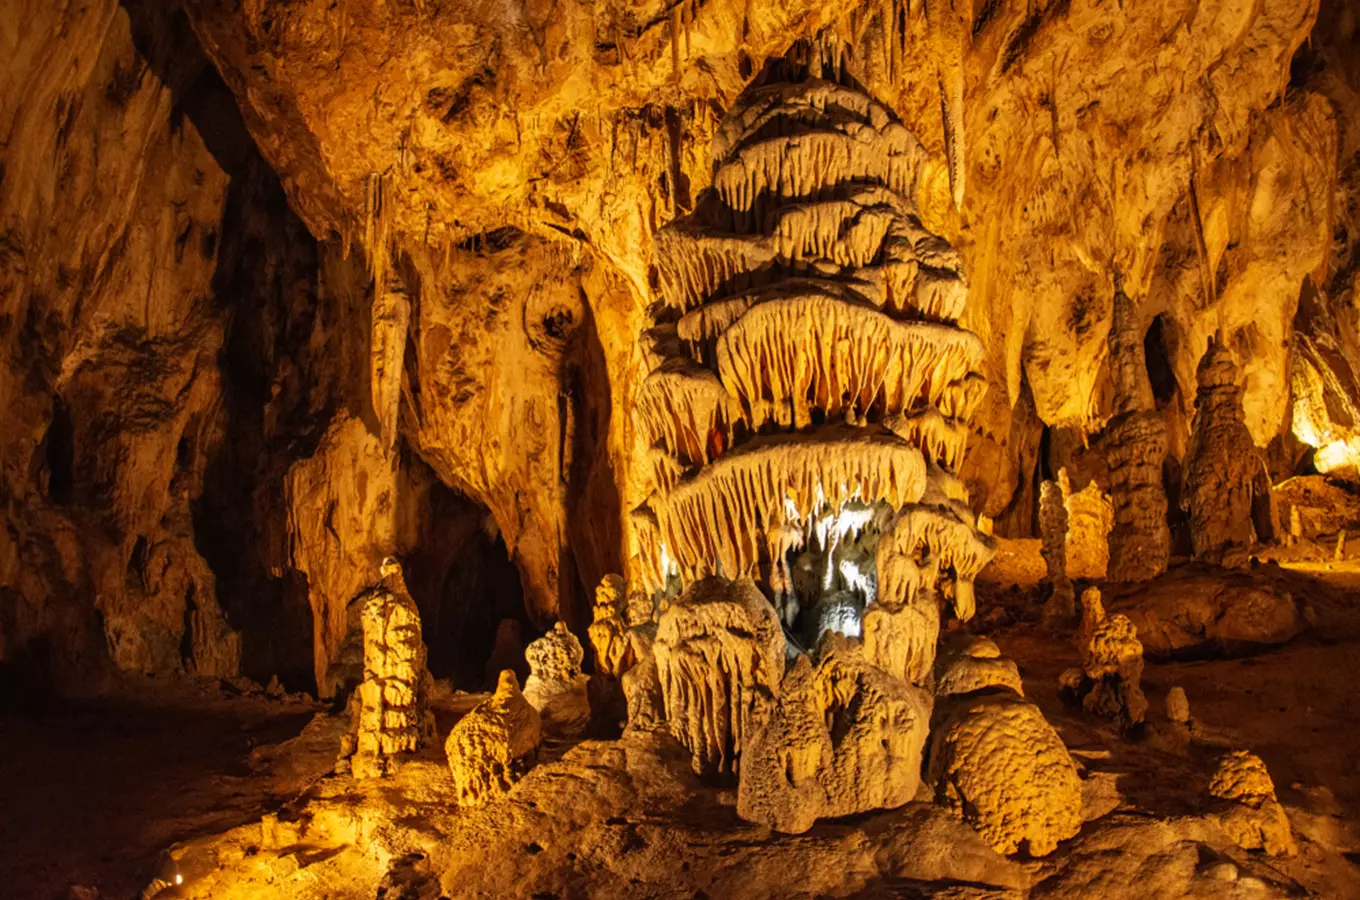 Zpřístupněné jeskyně ČR zahajují novou turistickou sezonu